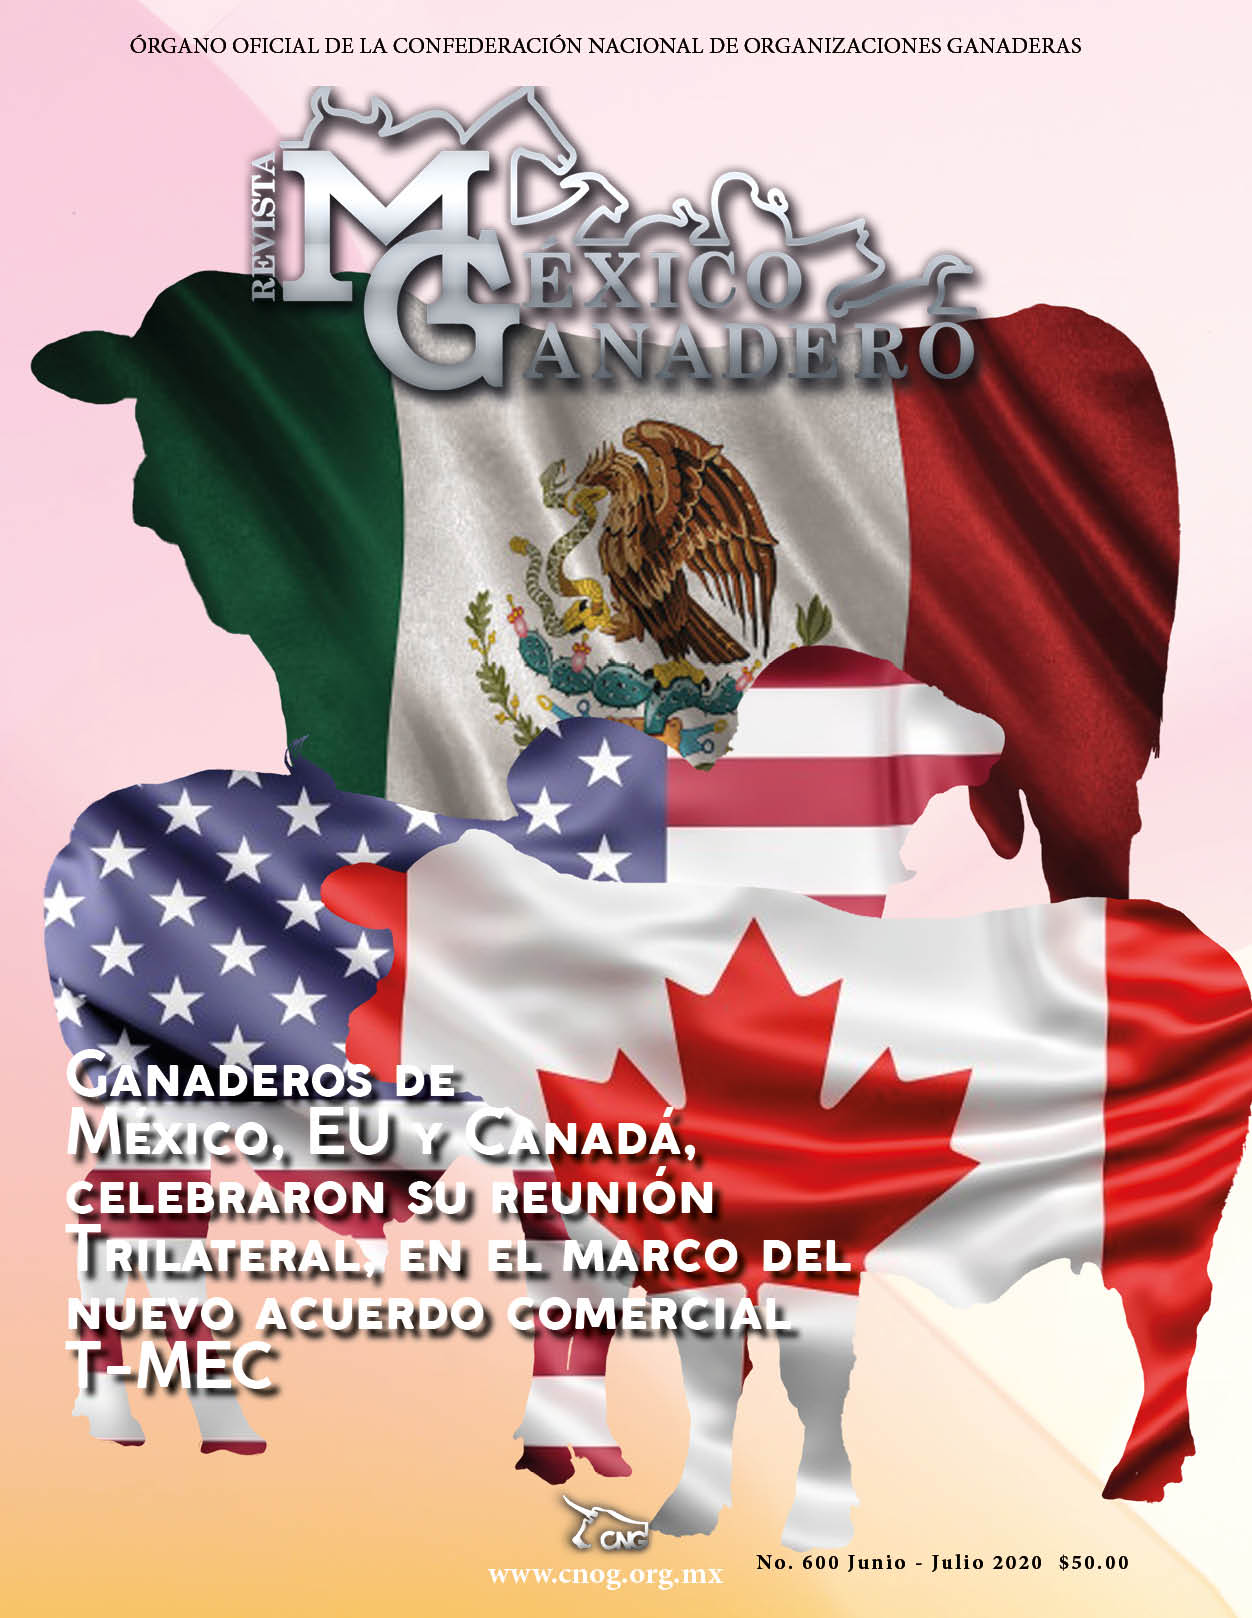 Portada de la revista México Ganadero. Edición 600 correspondiente a JUN-JUL 2020